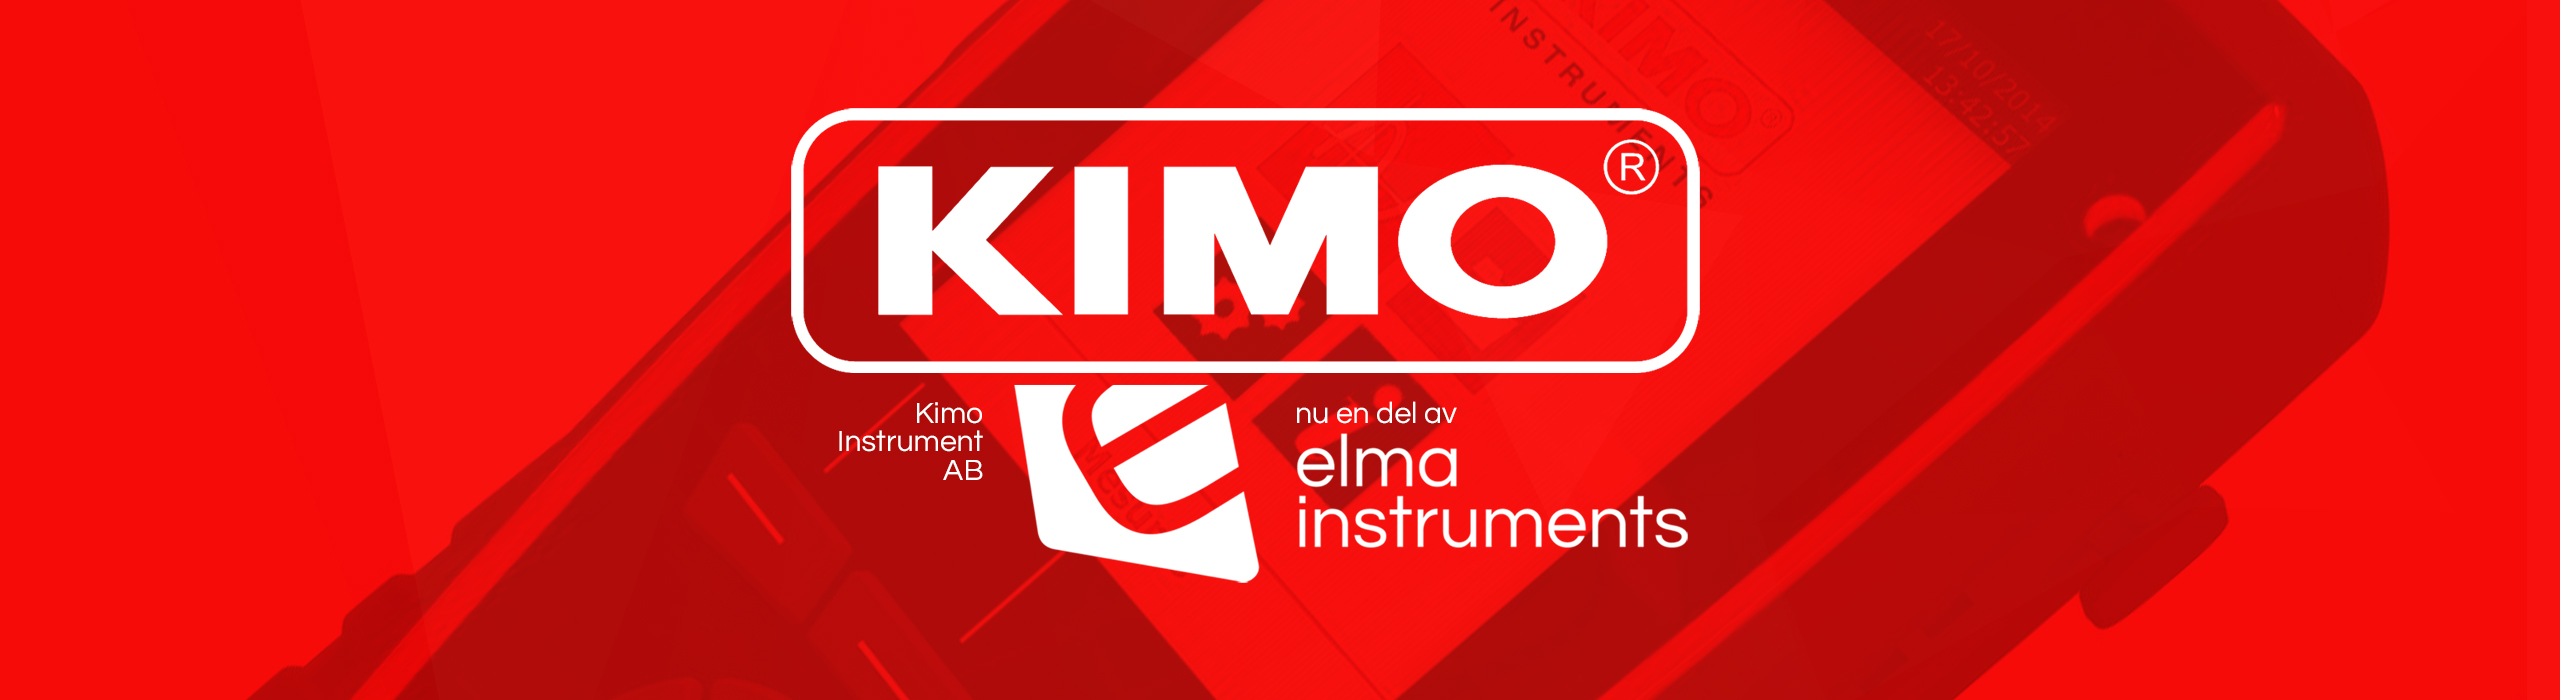 Elma instruments förvärvar Kimo Instrument Sverige AB